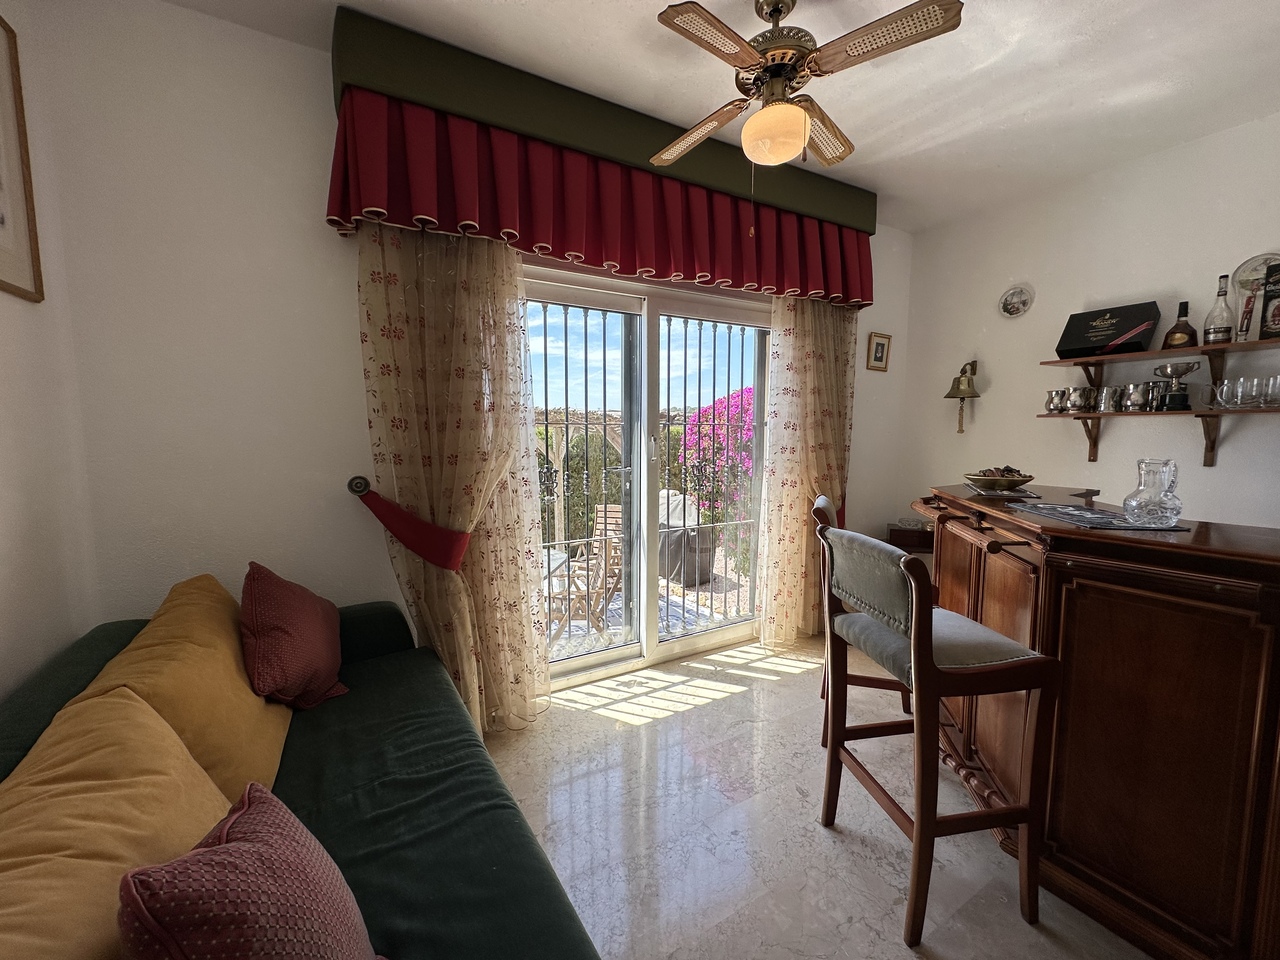 SWDF1717: Villa for sale in Las Ramblas